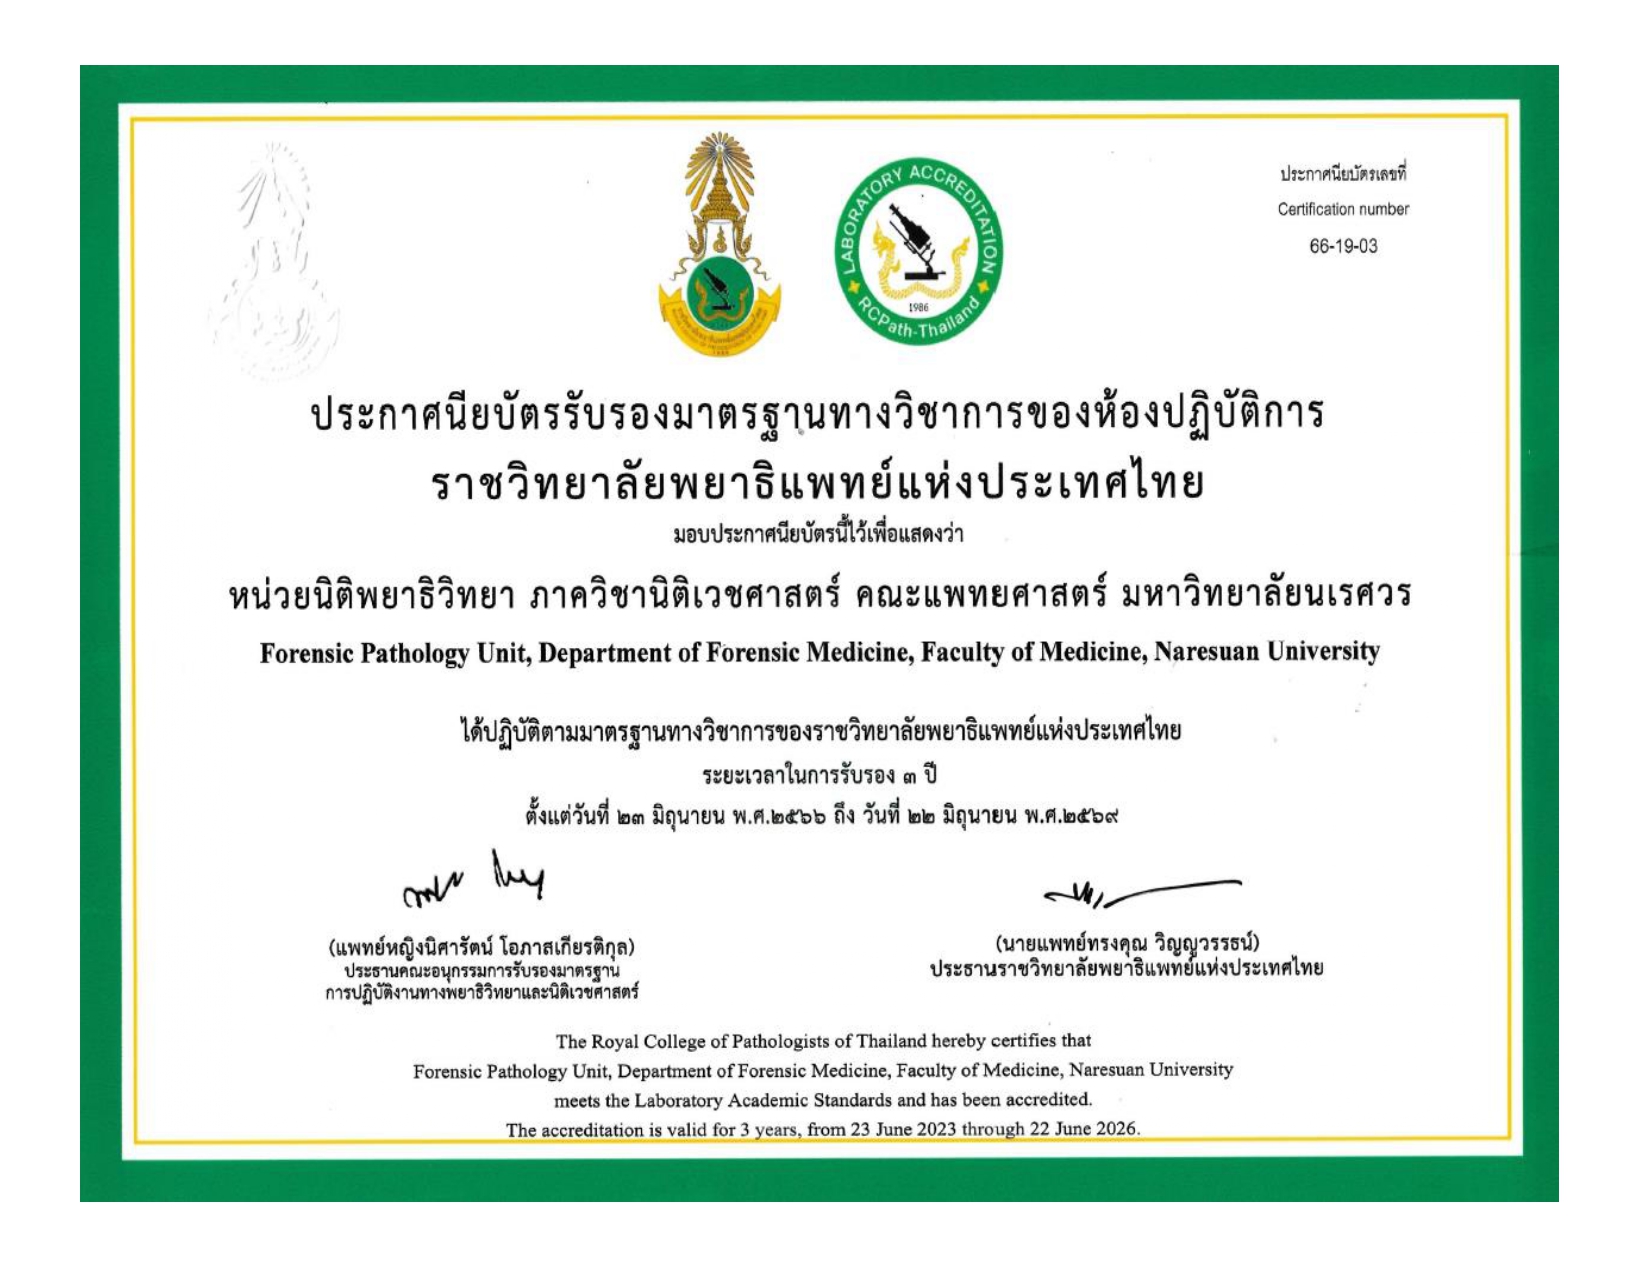 ประกาศนียบัตรรับรองมาตรฐานทางวิชาการของห้องปฏิบัติการราชวิทยาลัยพยาธิแห่งประเทศไทย